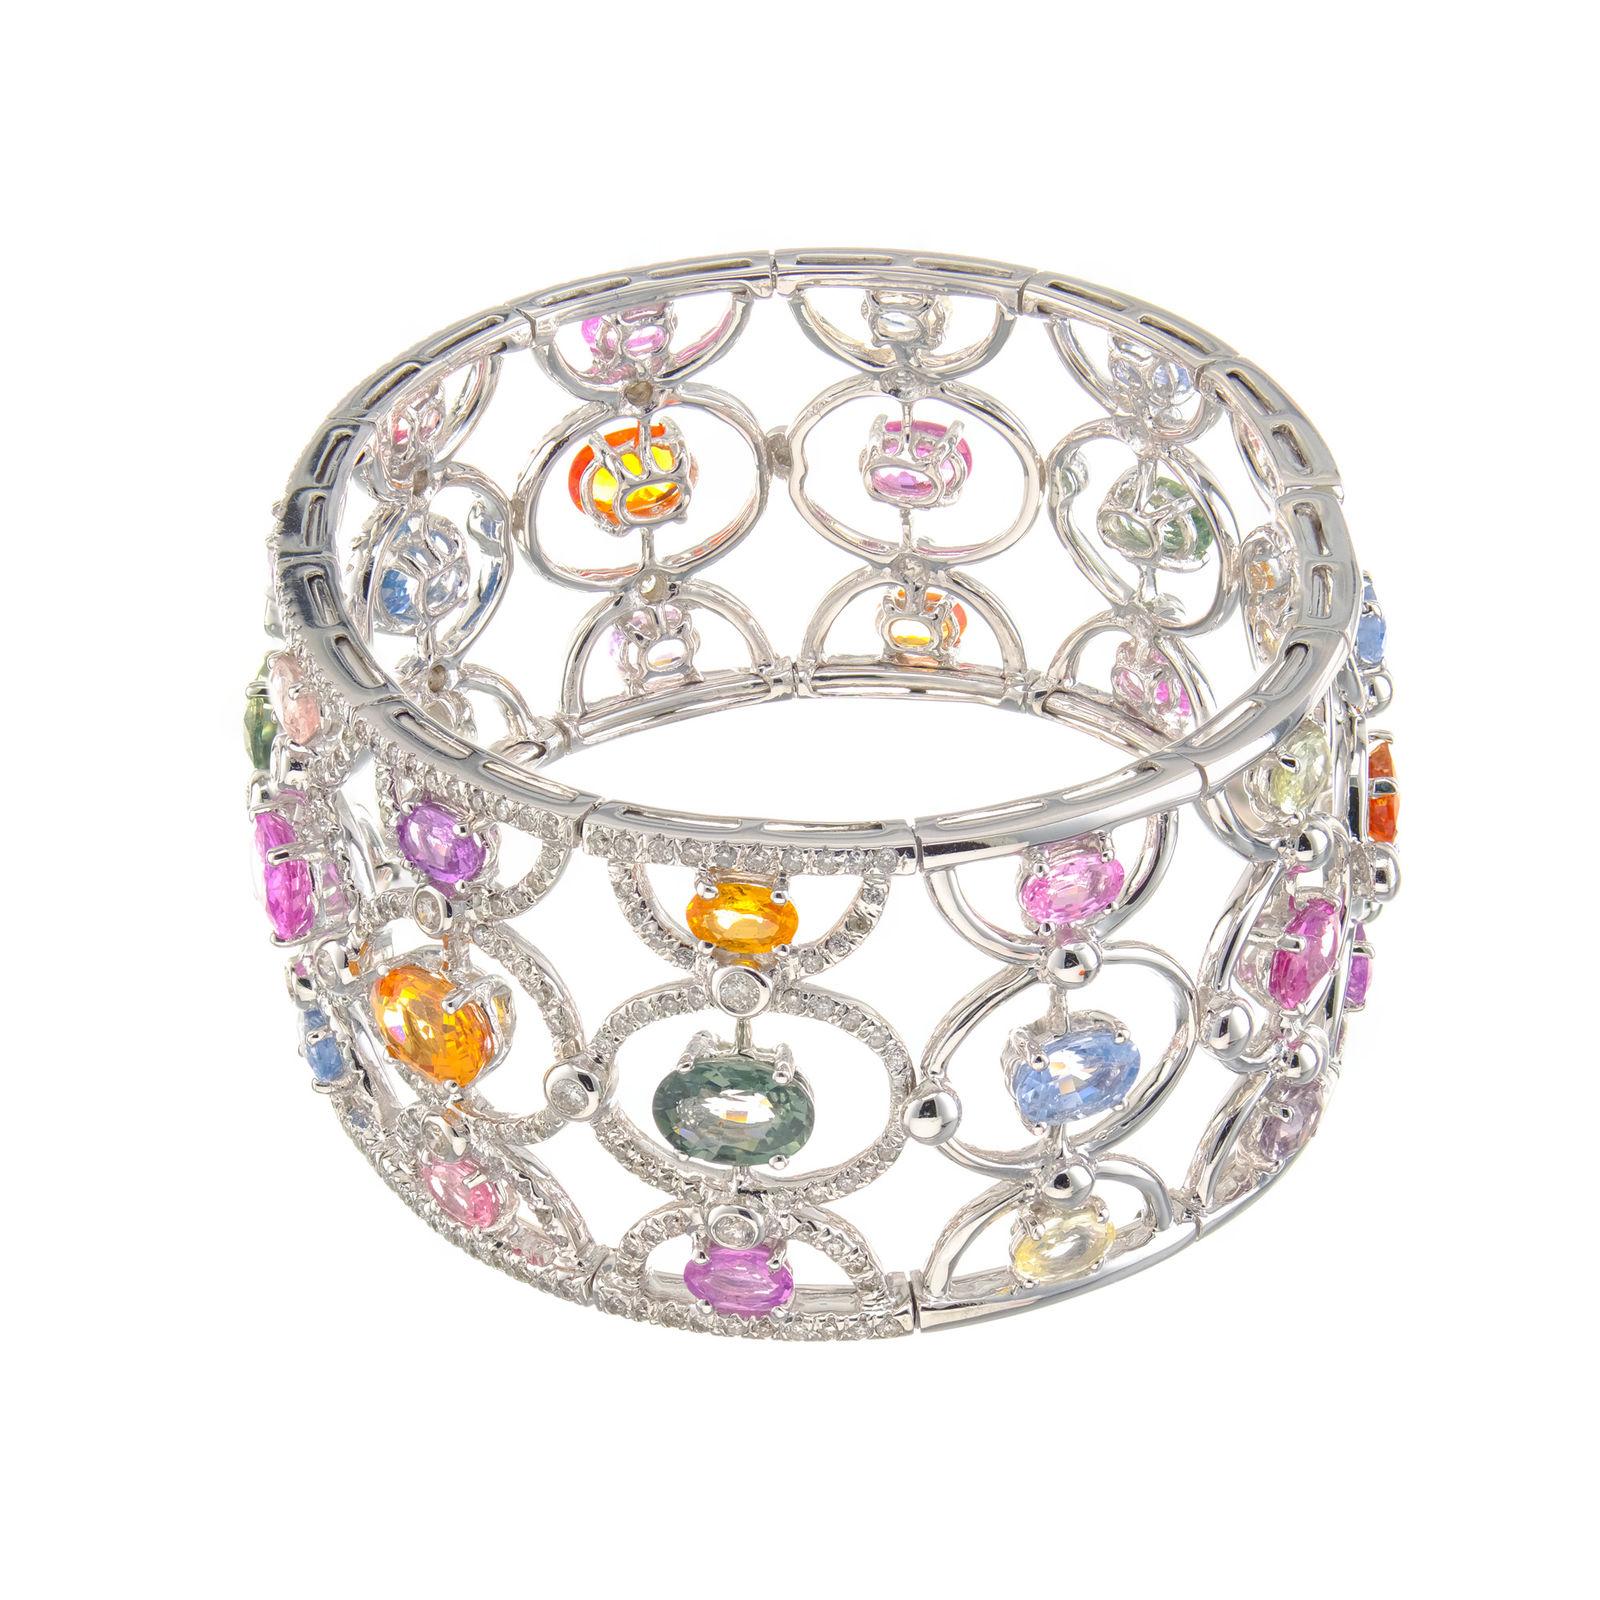 Oval Cut 12.80 Carat GIA Certified Multi-Color Sapphire Diamond Gold Cuff Bangle Bracelet